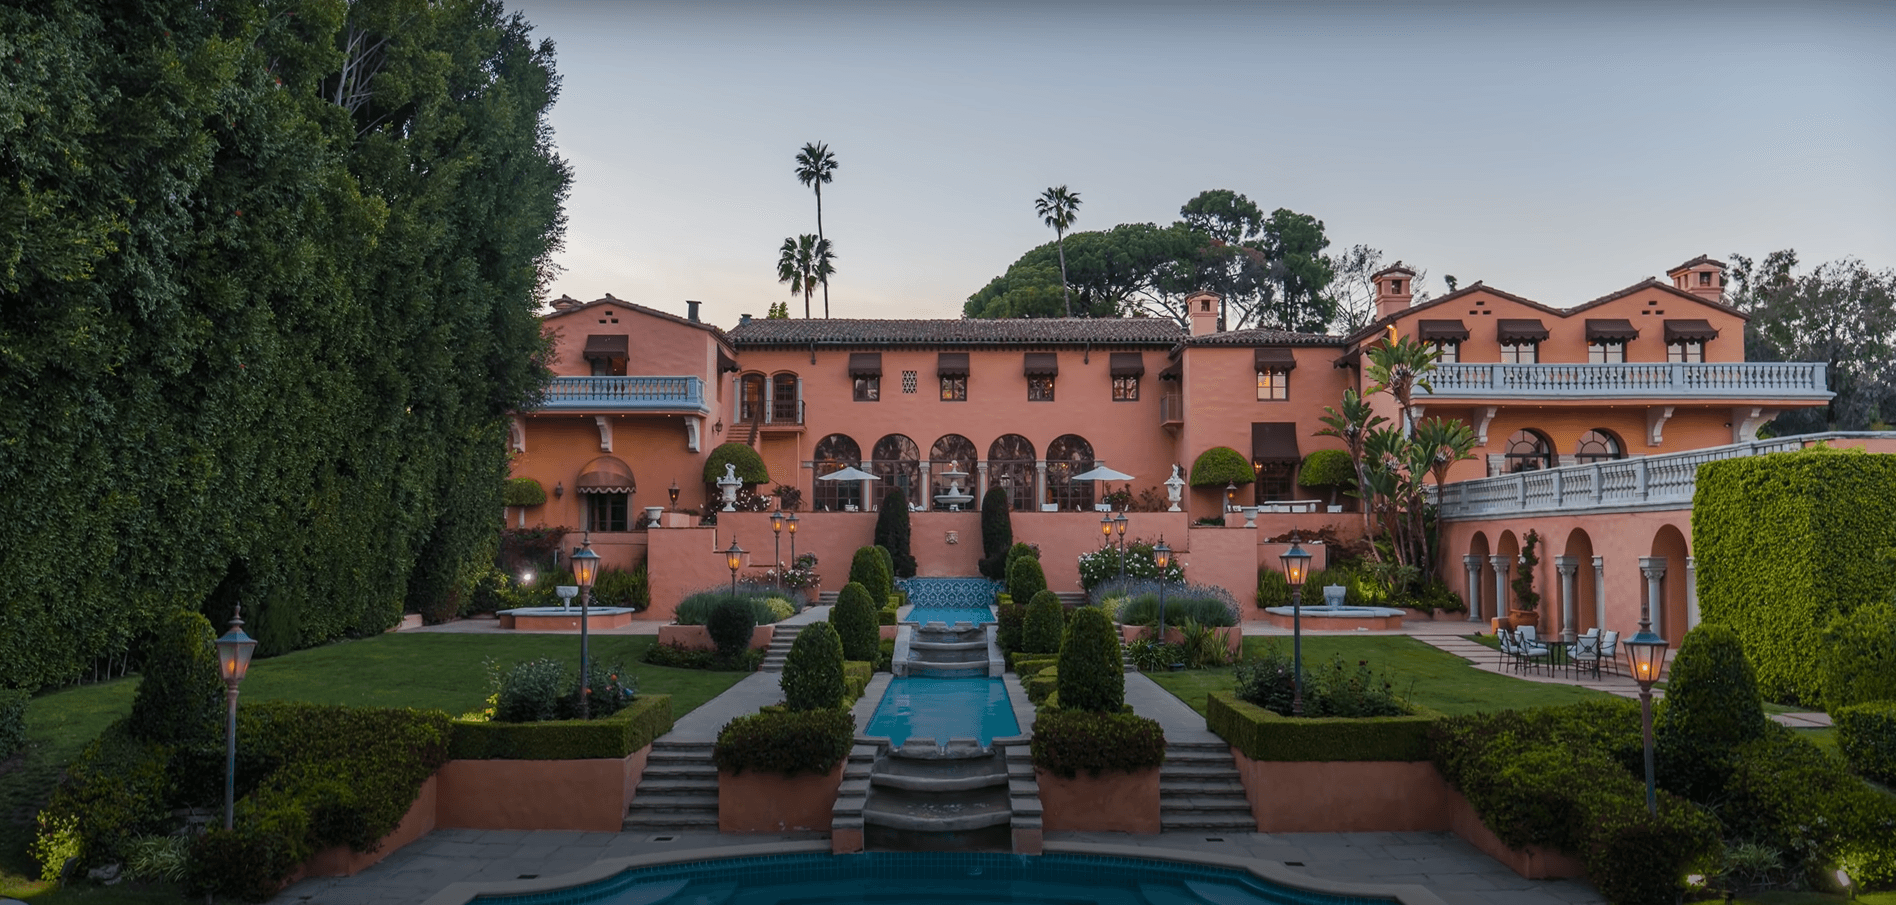 Villa im spanischen Kolonialstil vom Garten aus betrachtet